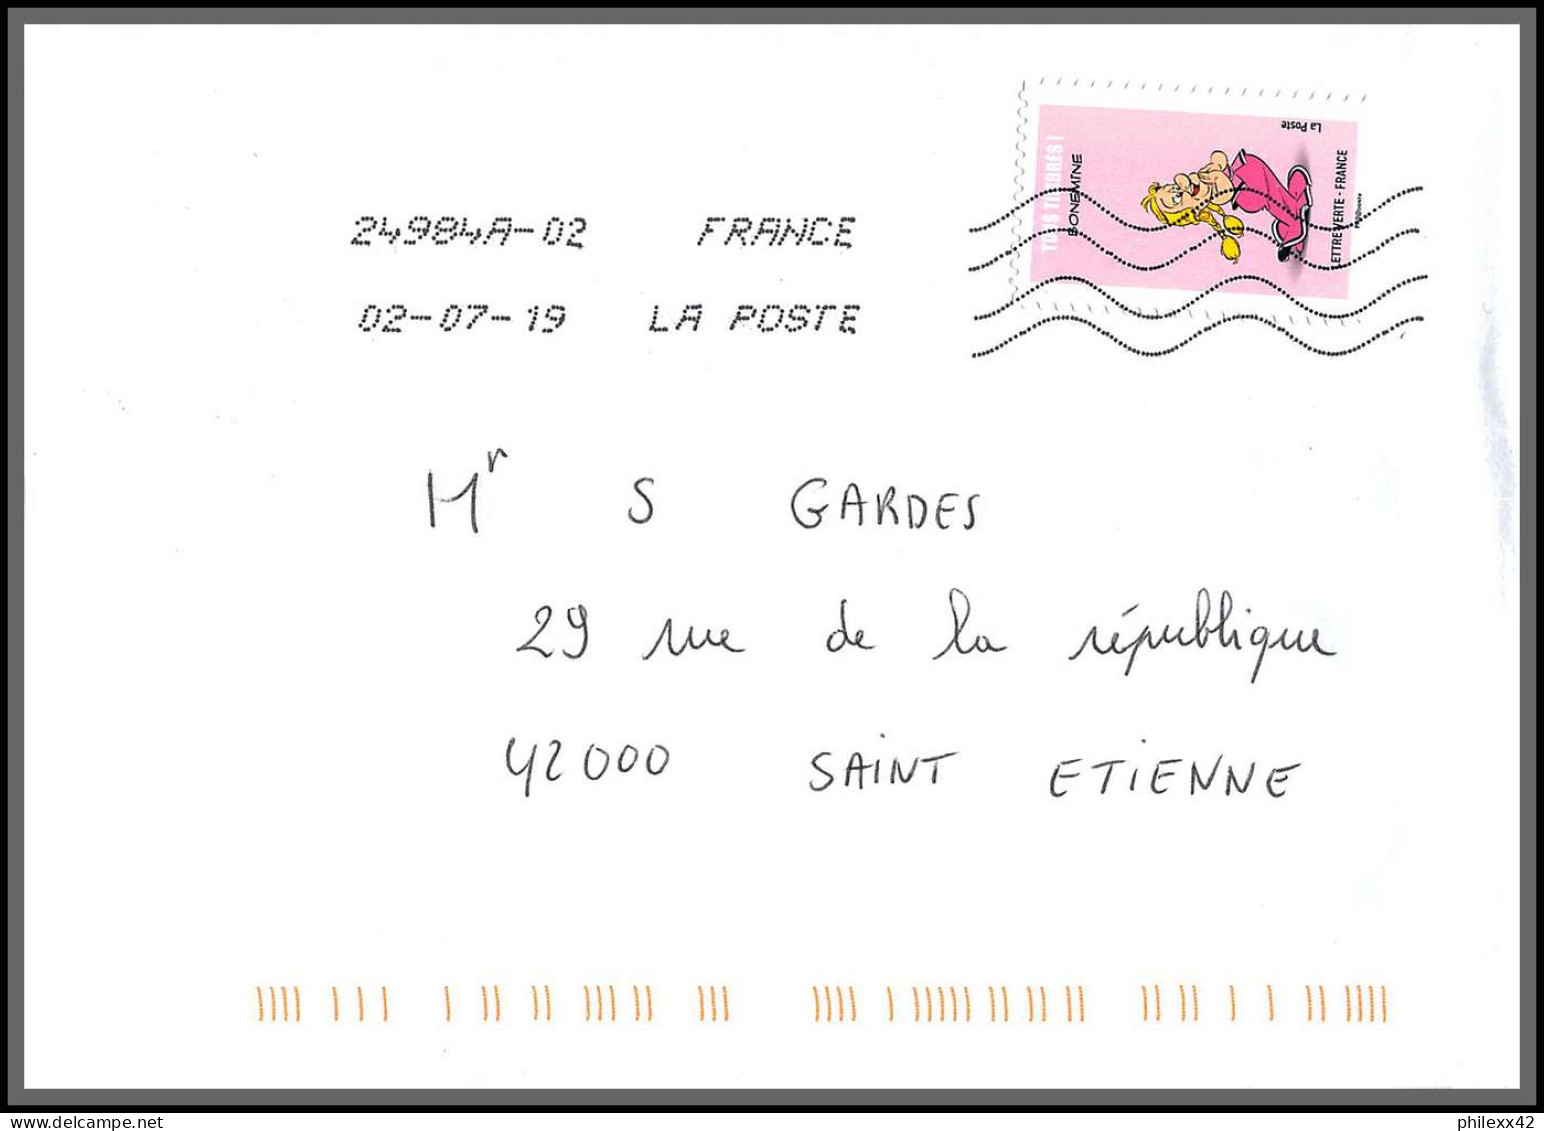 95730 - lot de 15 courriers lettres enveloppes de l'année 2019 divers affranchissements en EUROS